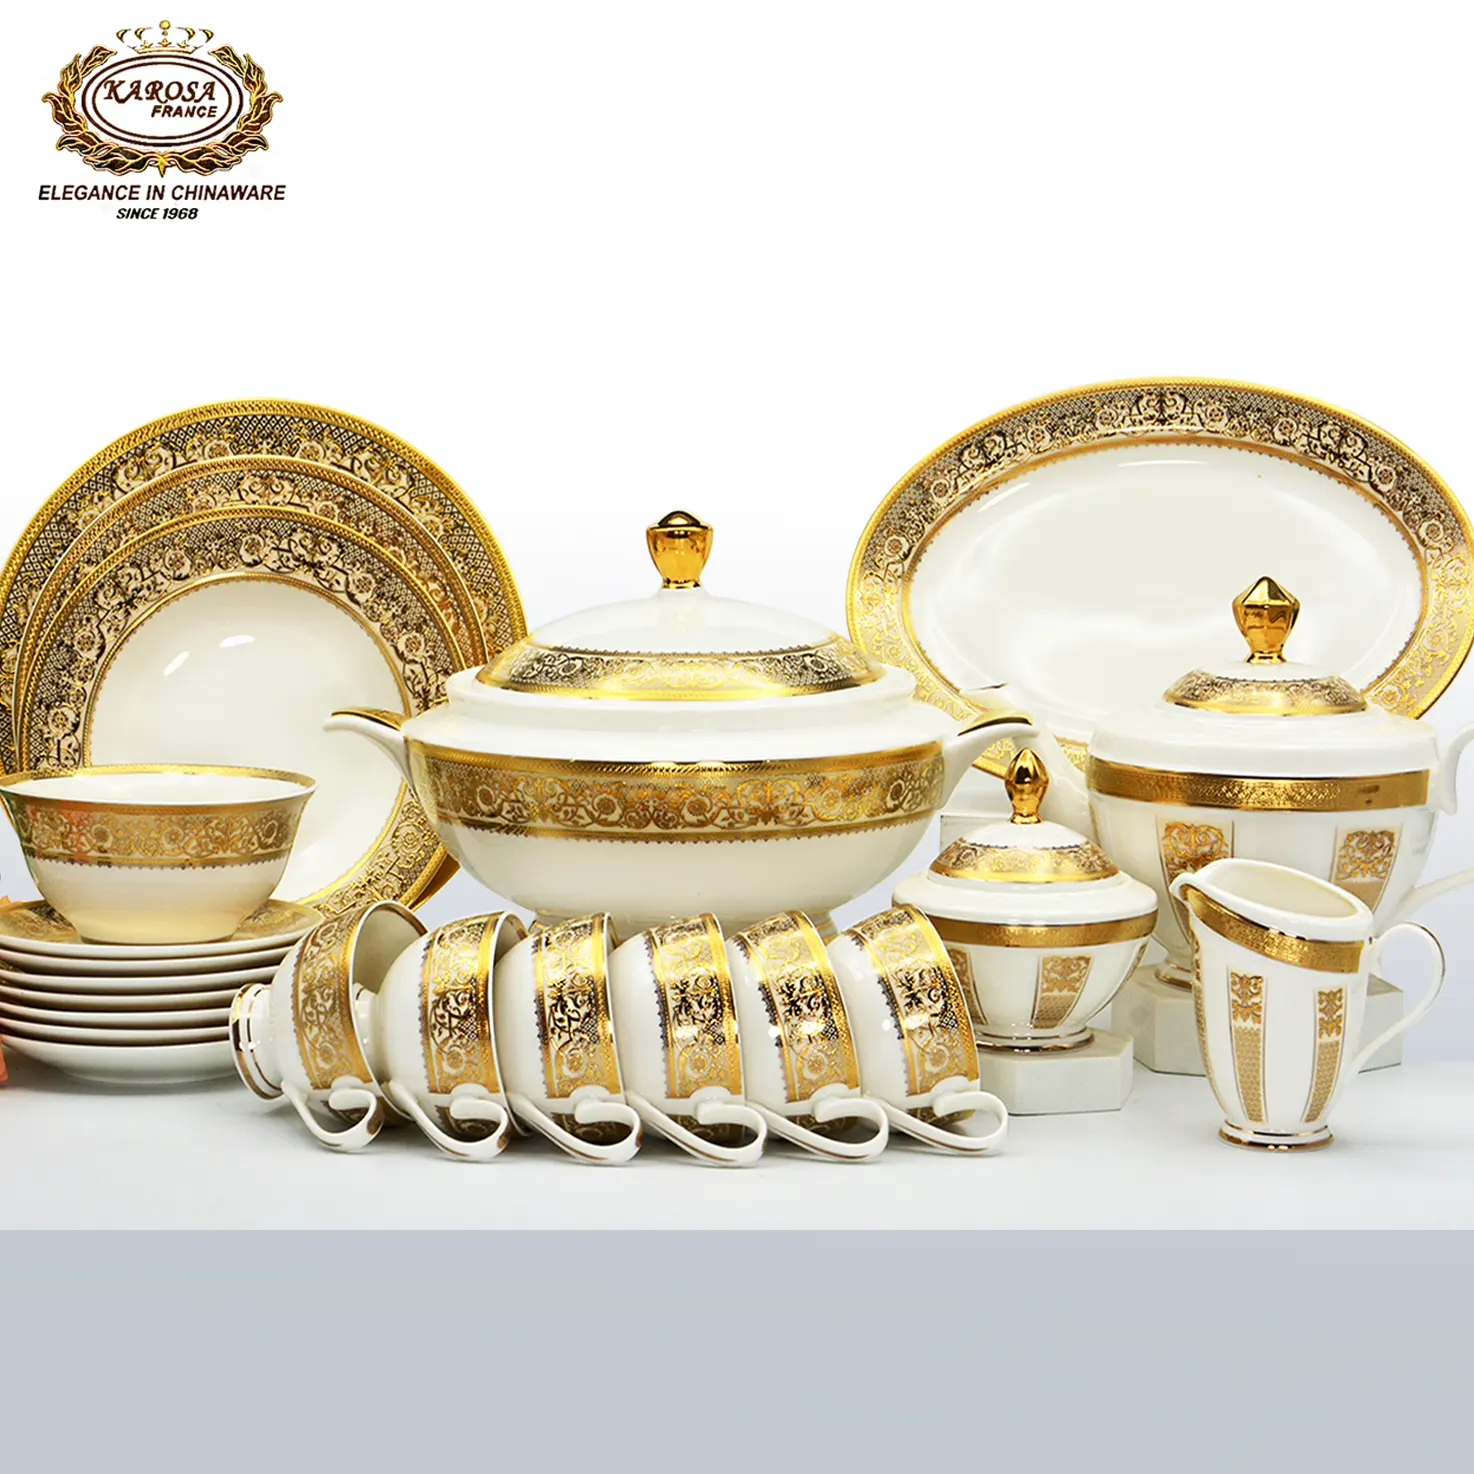 98 piezas Italia diseño oro decoración vajilla estilo real hueso China juegos de vajilla porcelana de lujo juego de cena